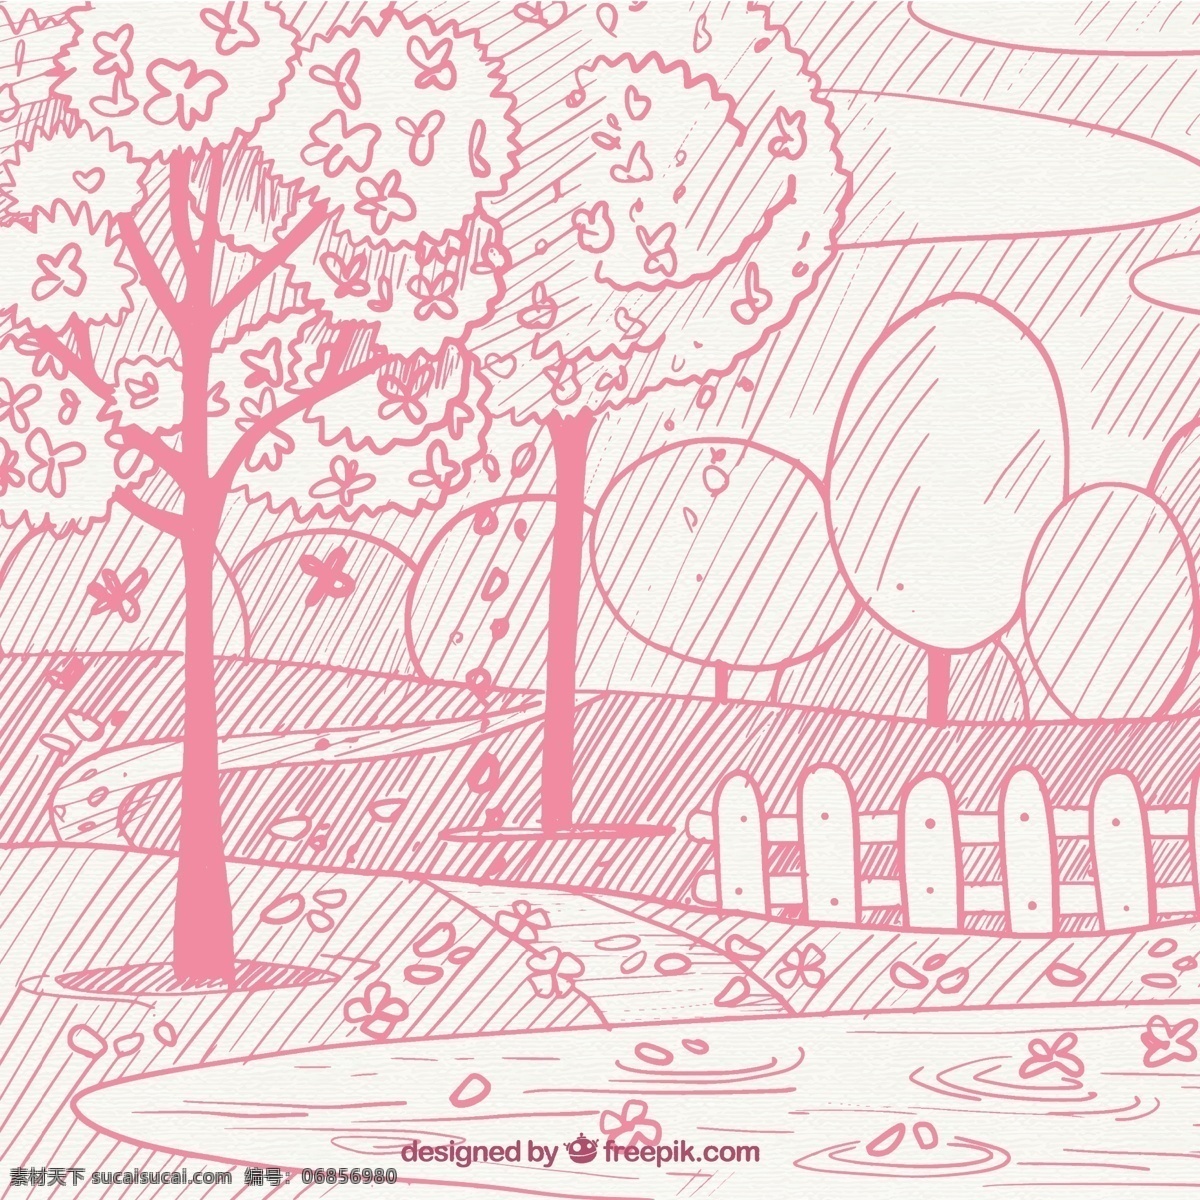 粉色 春天 风景 素描 背景 花卉 树木 手 自然 花卉背景 粉红色 手绘 景观 植物 绘画 自然背景 开花